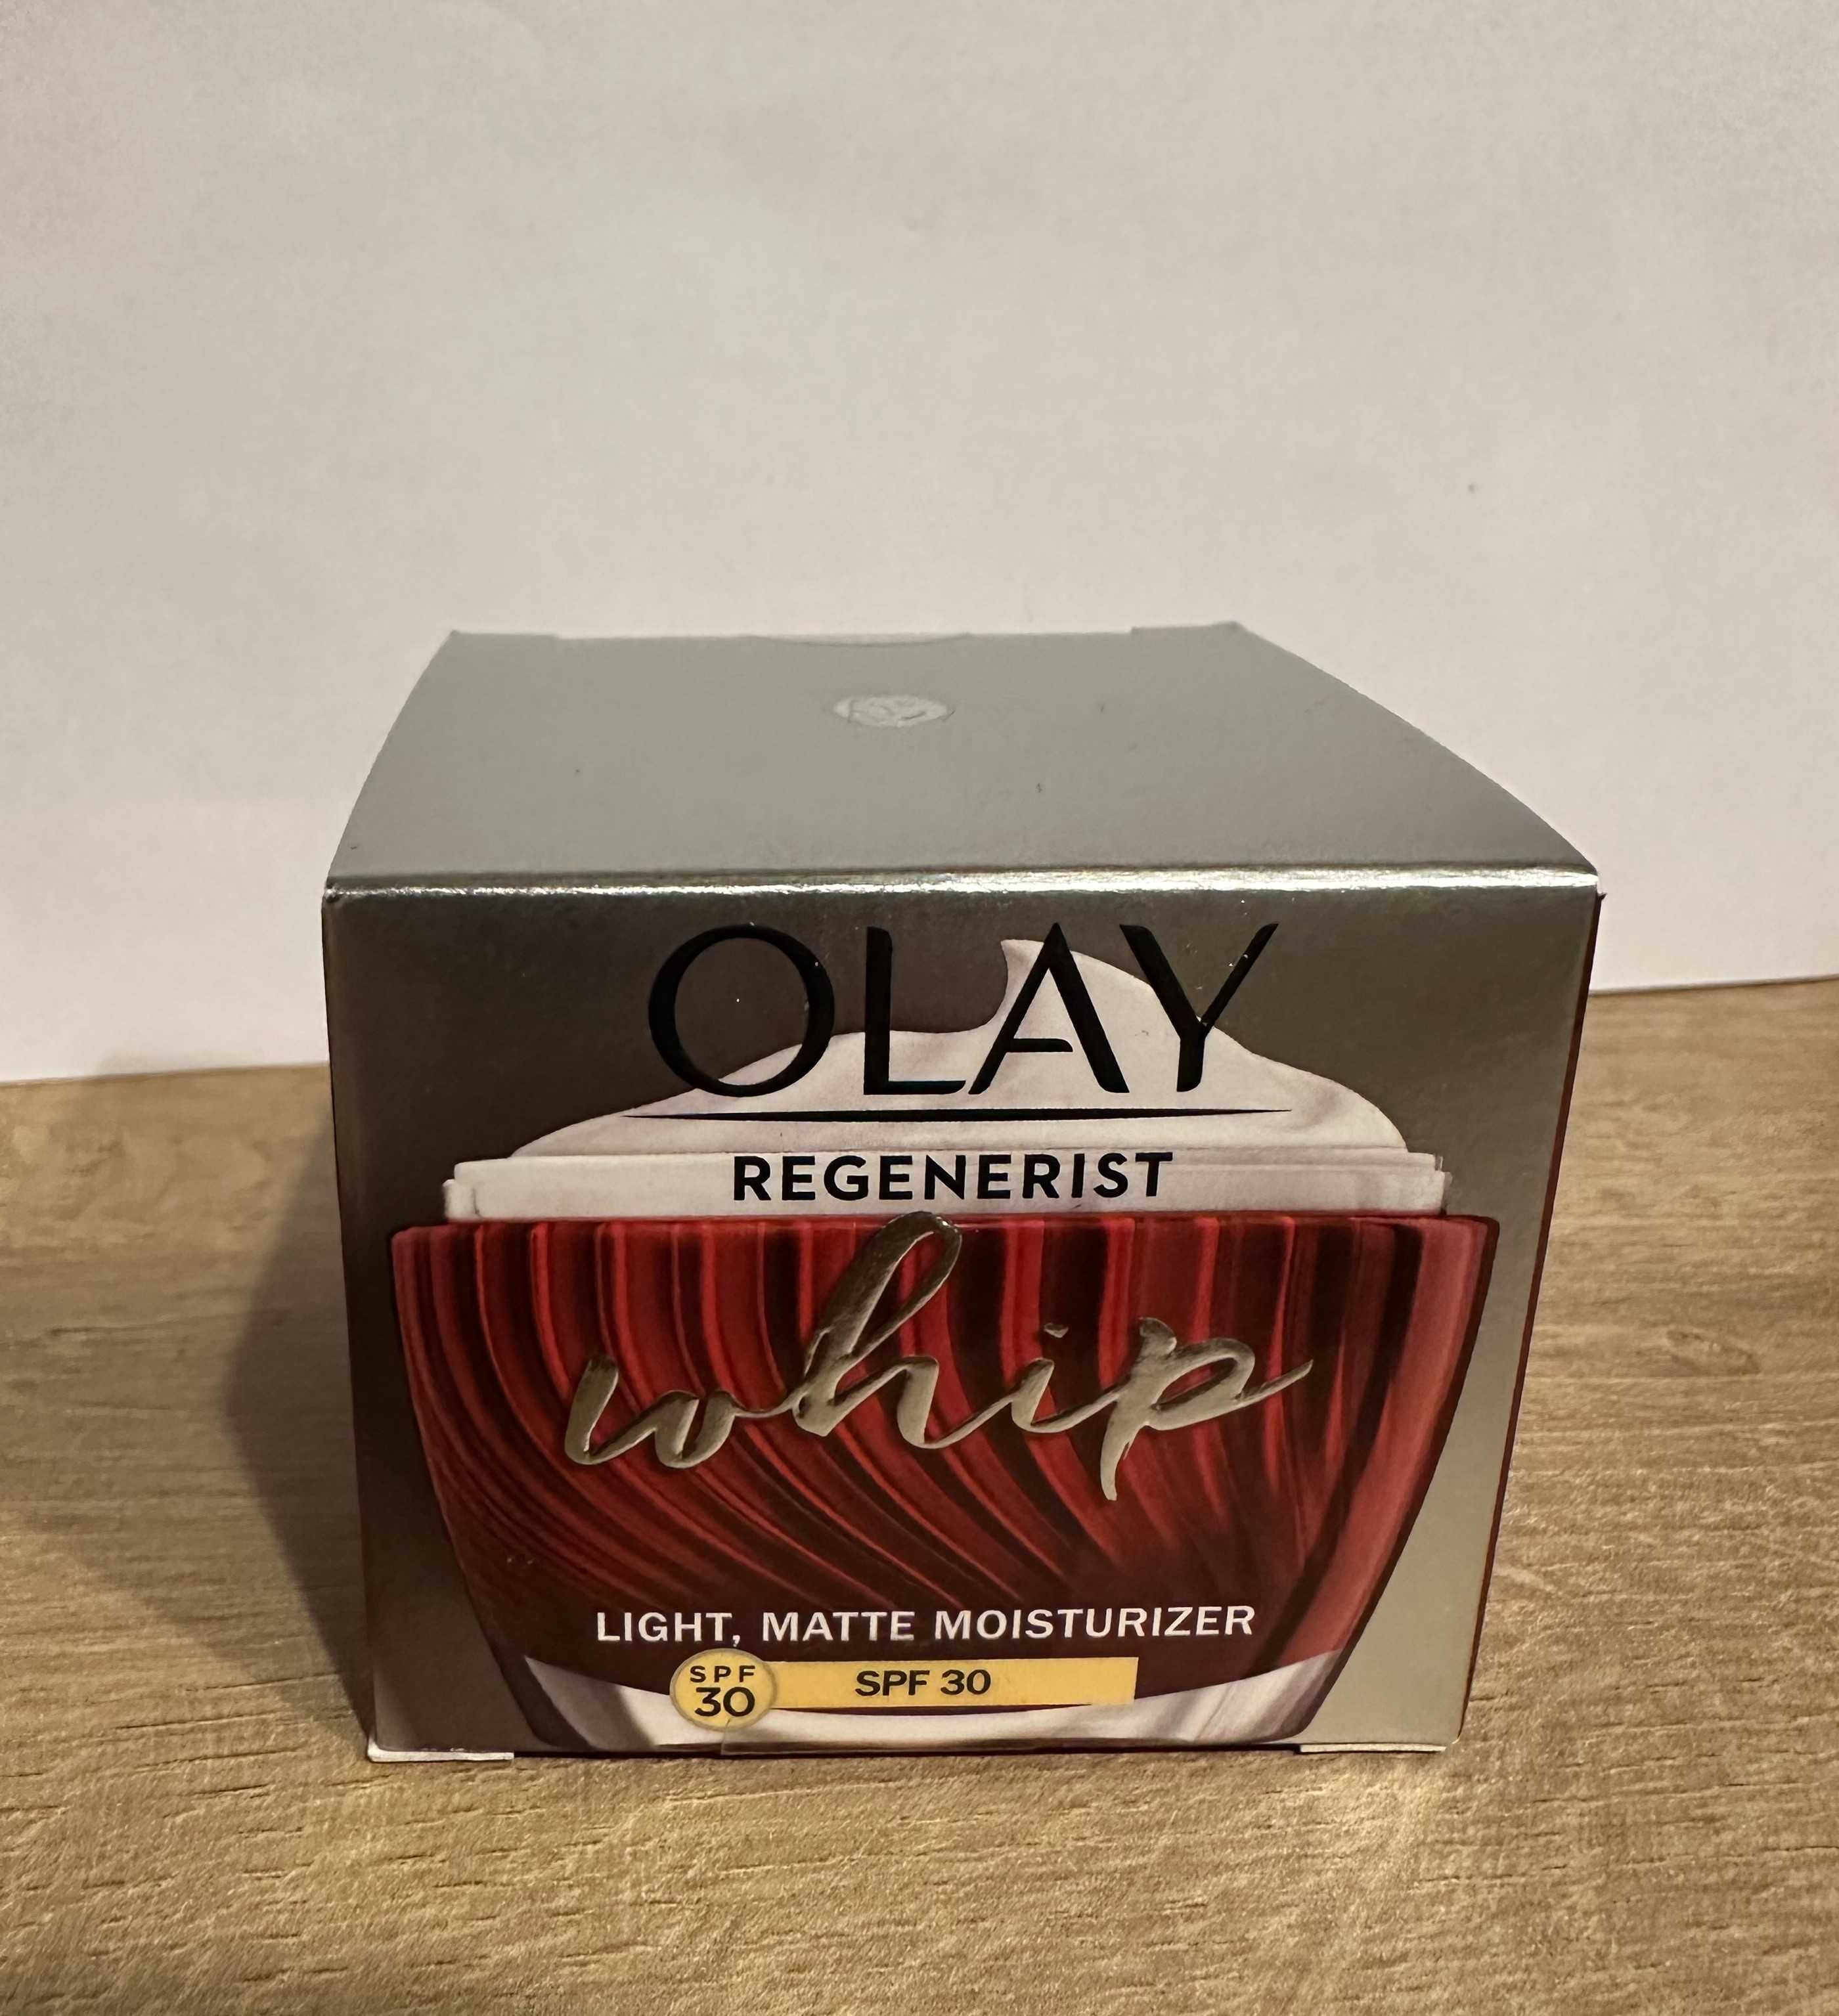 Krem - Olay Regeneristt Whip light, matte moisturizer